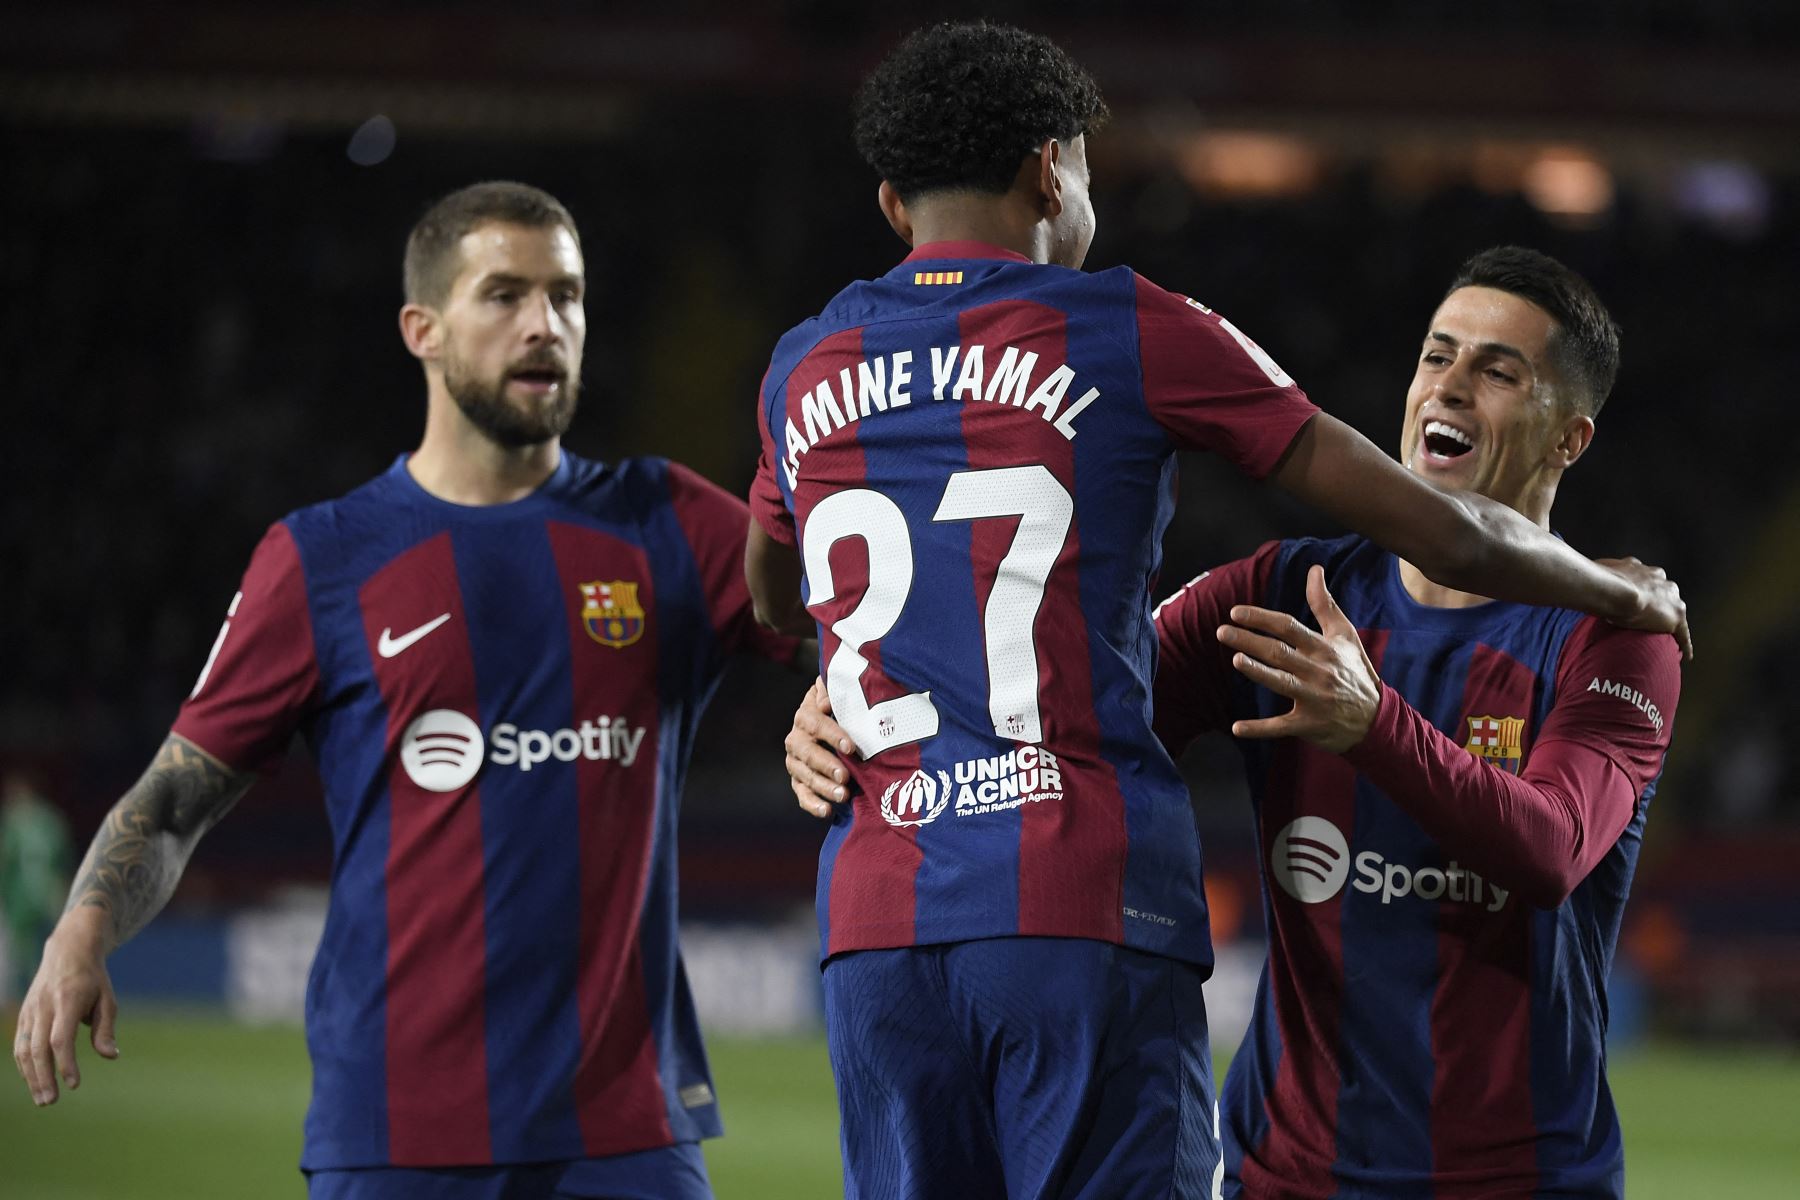 El delantero español del Barcelona, Lamine Yamal celebra marcar el gol inicial durante el partido de fútbol de la liga española entre el FC Barcelona y el Granada FC en el Estadi Olimpic Lluis Companys de Barcelona.
Foto: AFP